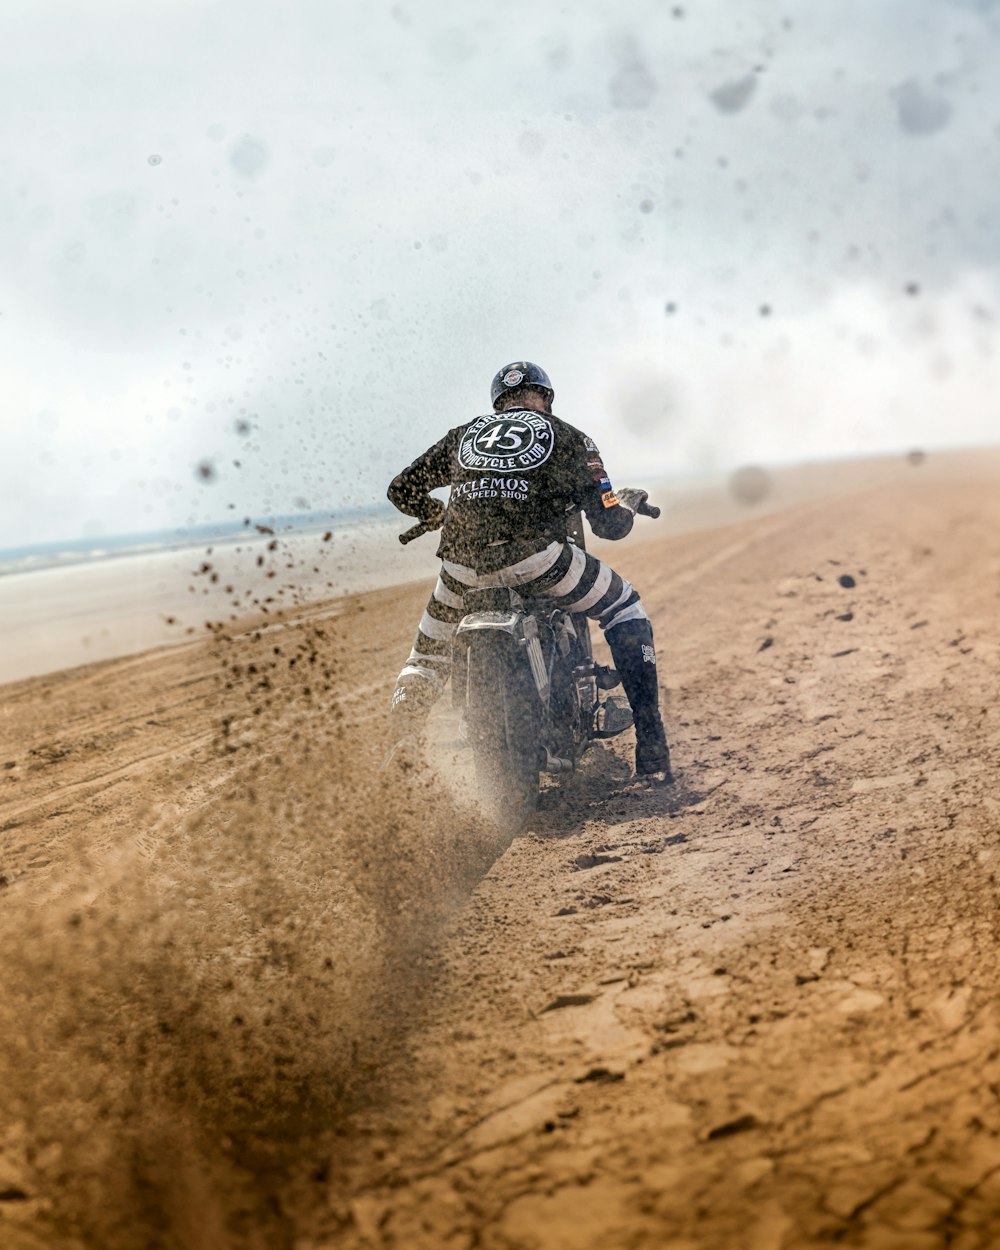 a man riding a dirt bike on top of a sandy beach